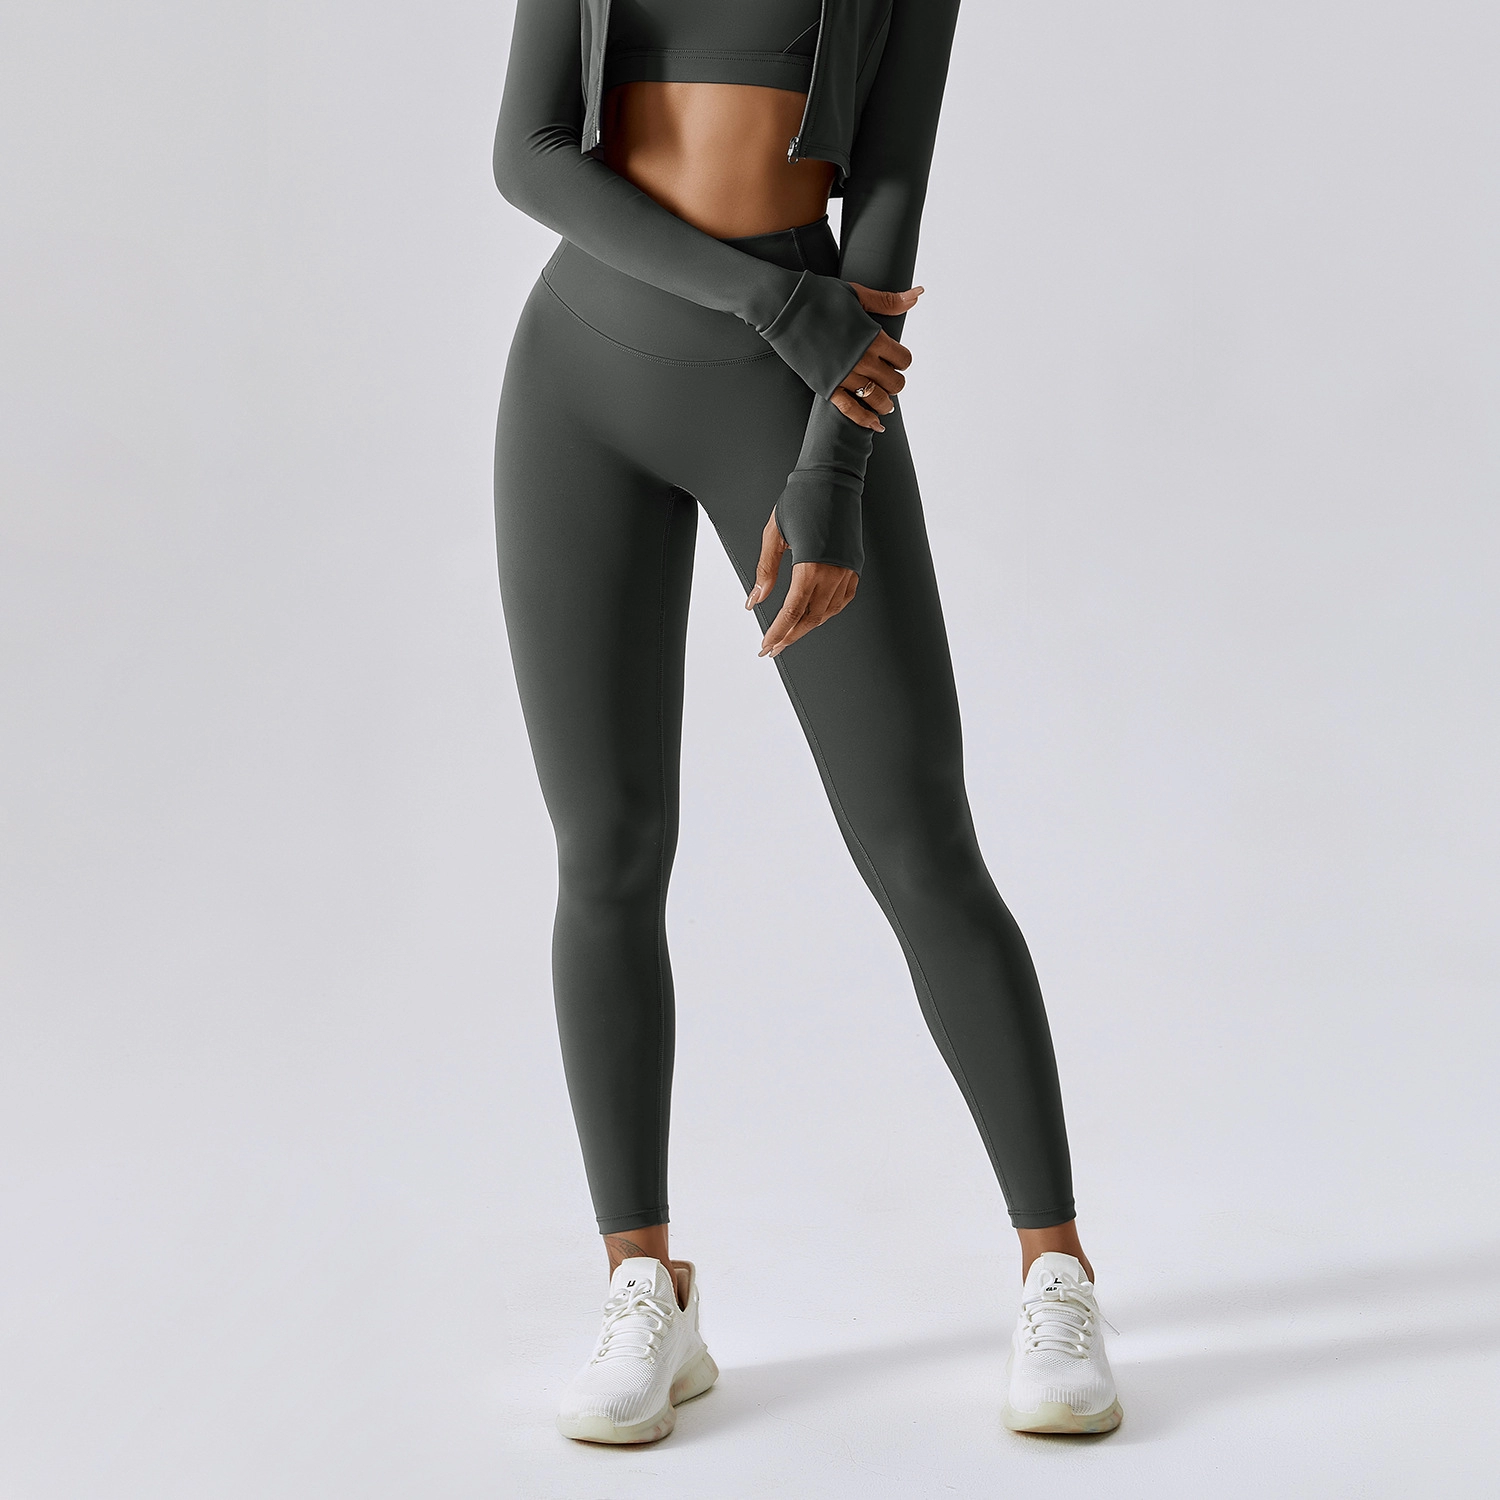 Yoga Wear Long-Sleeved Sports Sweater Female Outdoor Fitness Wear V-neck Set Head Casual Tops Sweatshirt